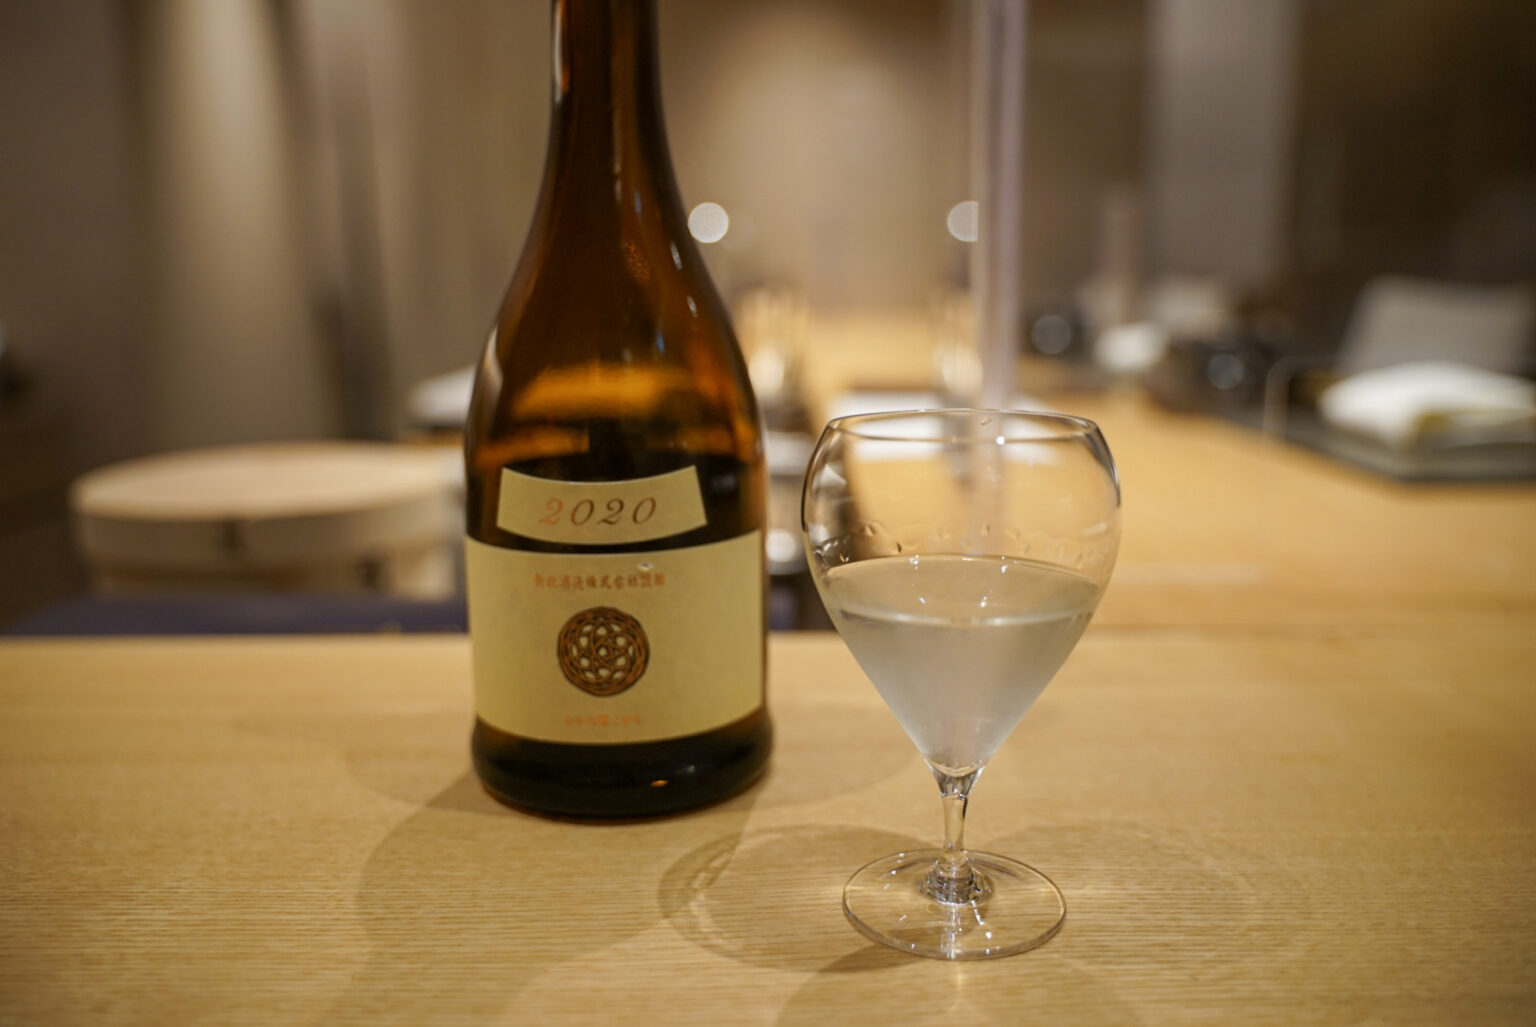 秋田生まれの酒米「酒こまち」を用いて、特有の雪解け水を思わせるキリッとした印象を与える味わいに。「Ecru エクリュ 生成 2020」。